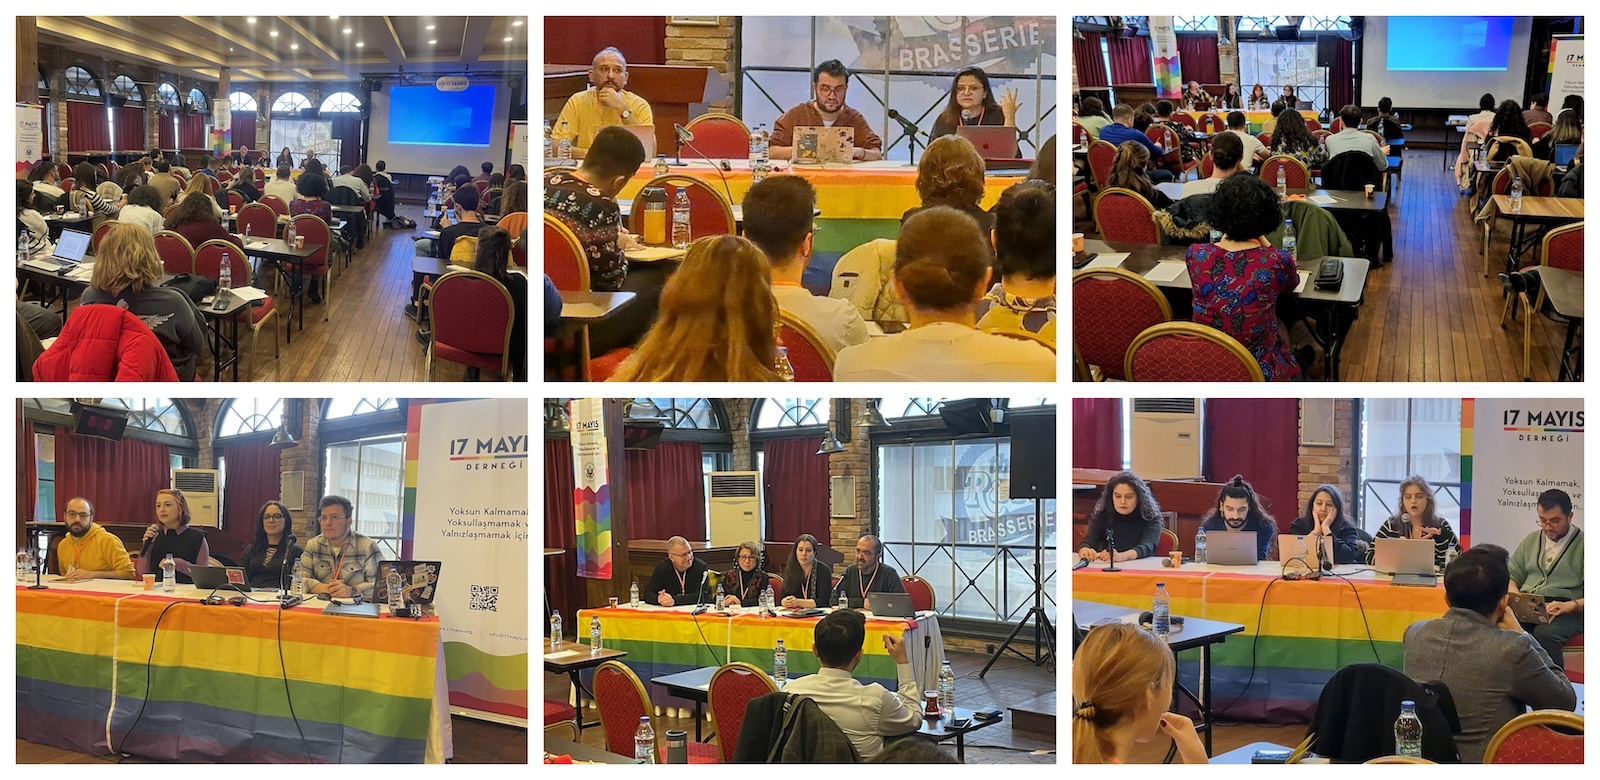 16 şehirden avukat, sosyal hizmet uzmanı ve psikologlar 17 Mayıs Güçlenme Konferansı’ndaydı | Kaos GL - LGBTİ+ Haber Portalı Haber